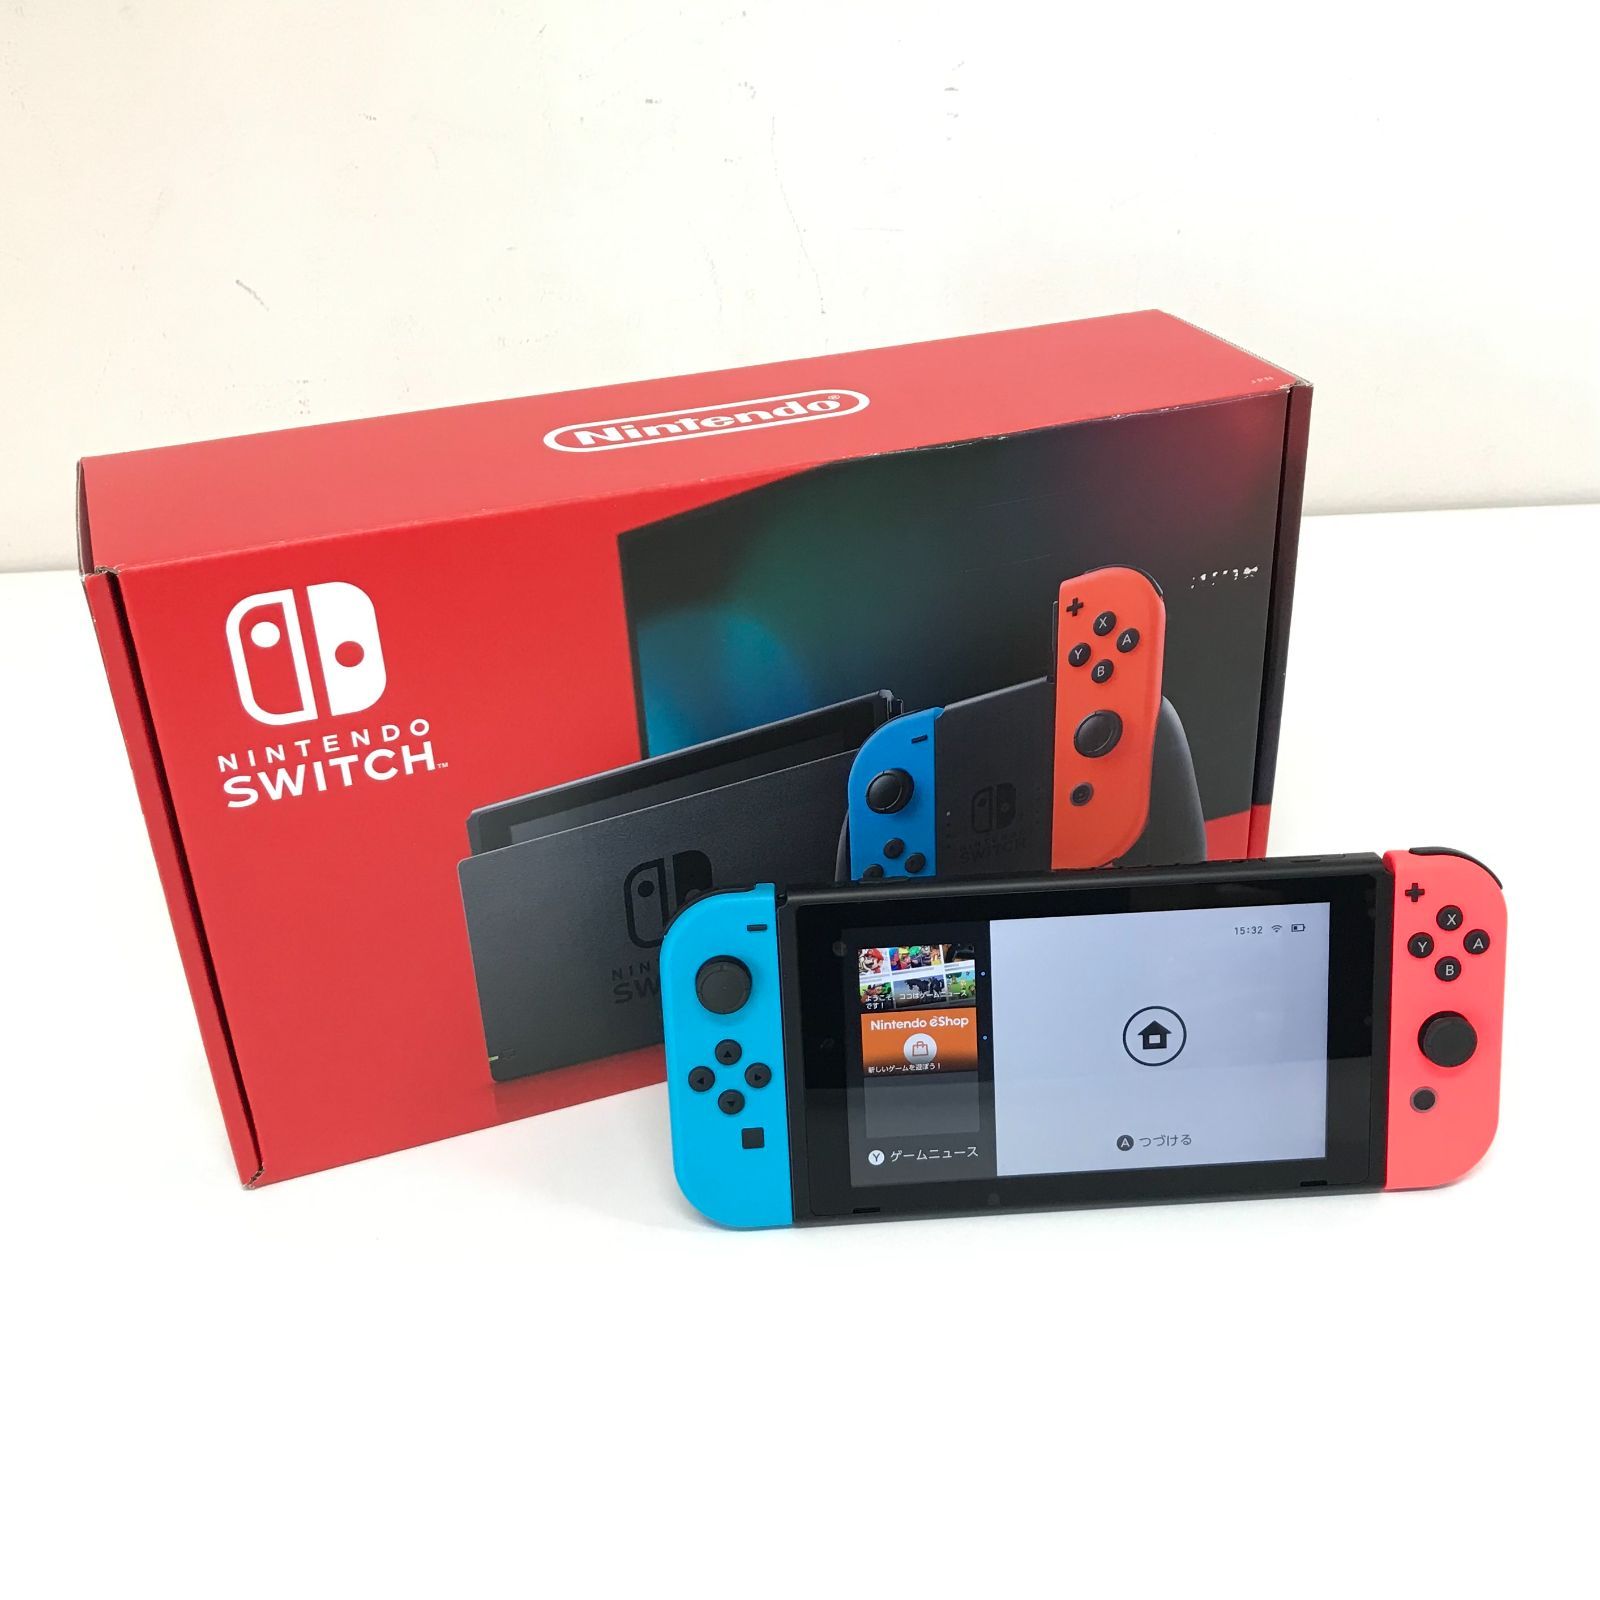 θ【未使用品】Nintendo Switch 新型 ネオンブルー/ネオンレッド - 買取